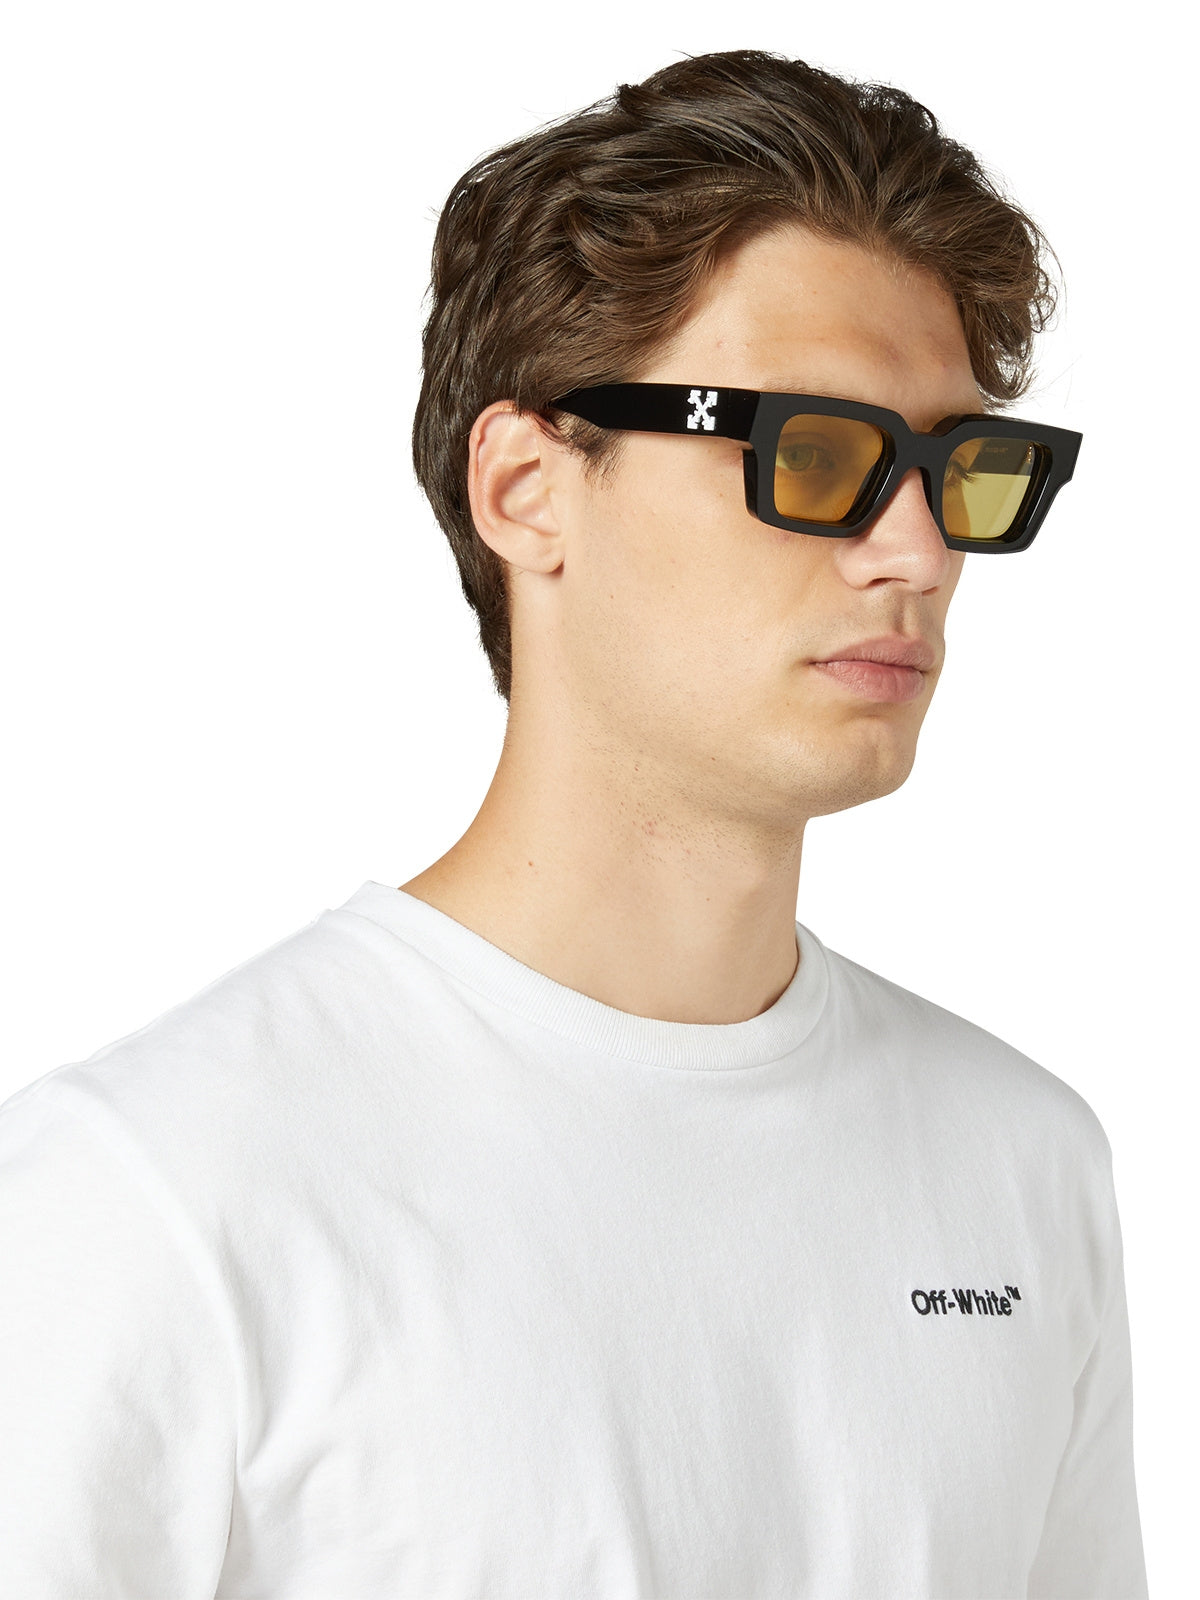 Off-White - Virgil logo sunglasses in blue OERI008C99PLA002 - buy